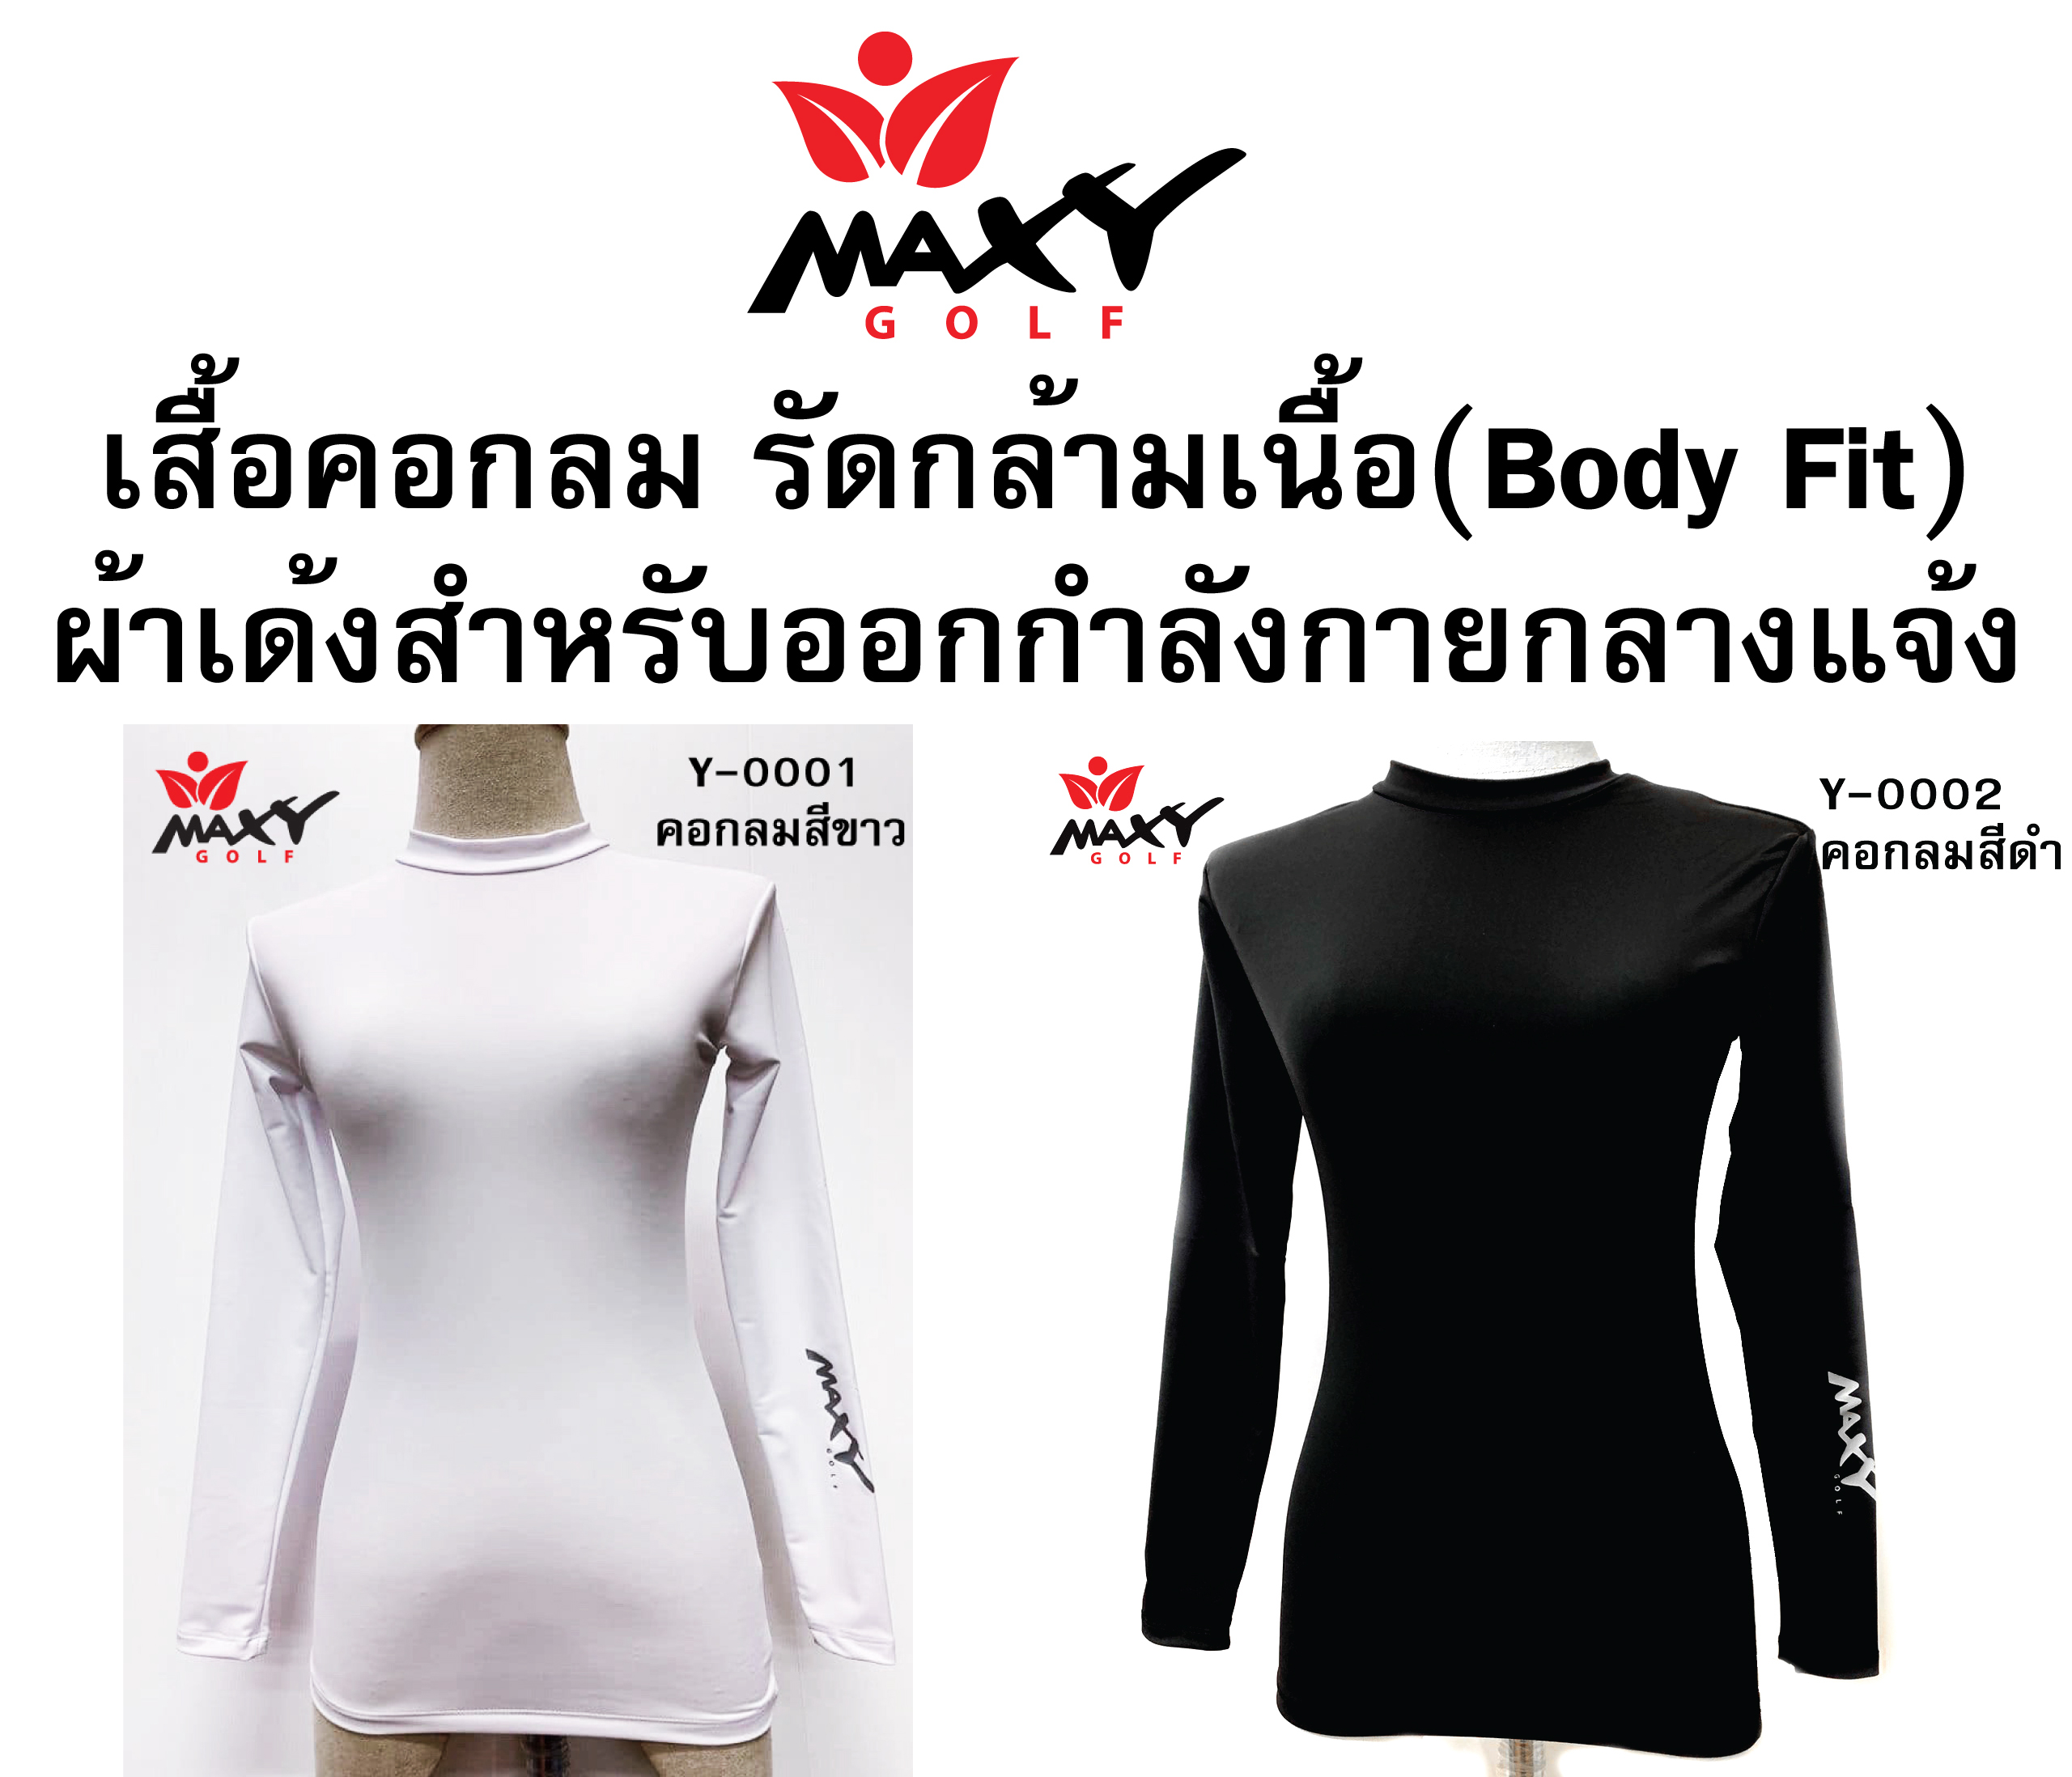 เสื้อรัดกล้ามเนื้อ (Body Fit) สำหรับสุภาพสตรี สีดำและสีขาว(*คอสั้น) (S - 3XL) ยี่ห้อ MAXY GOLF